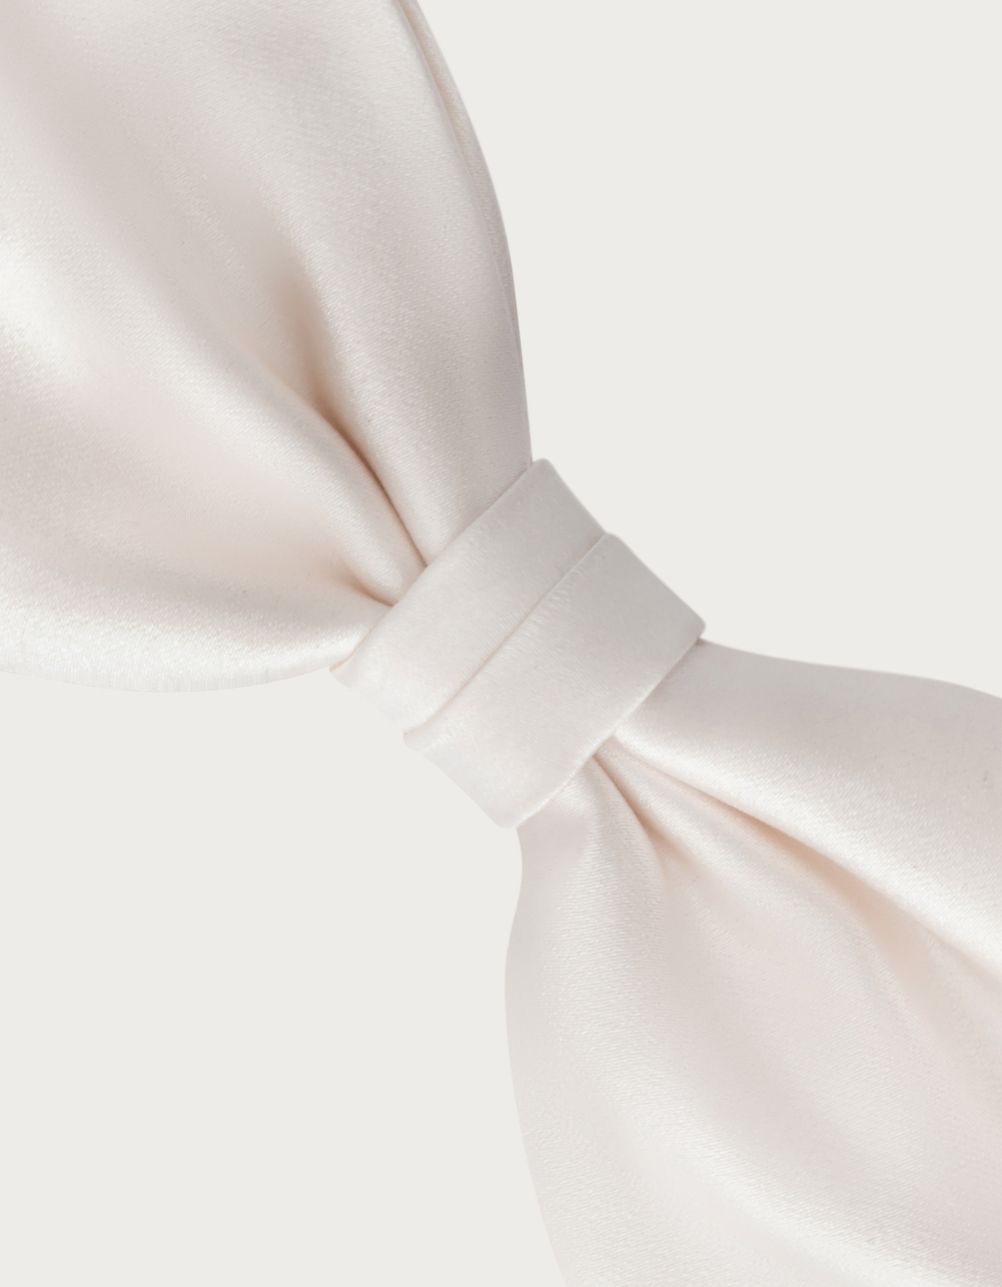 White silk bow-tie